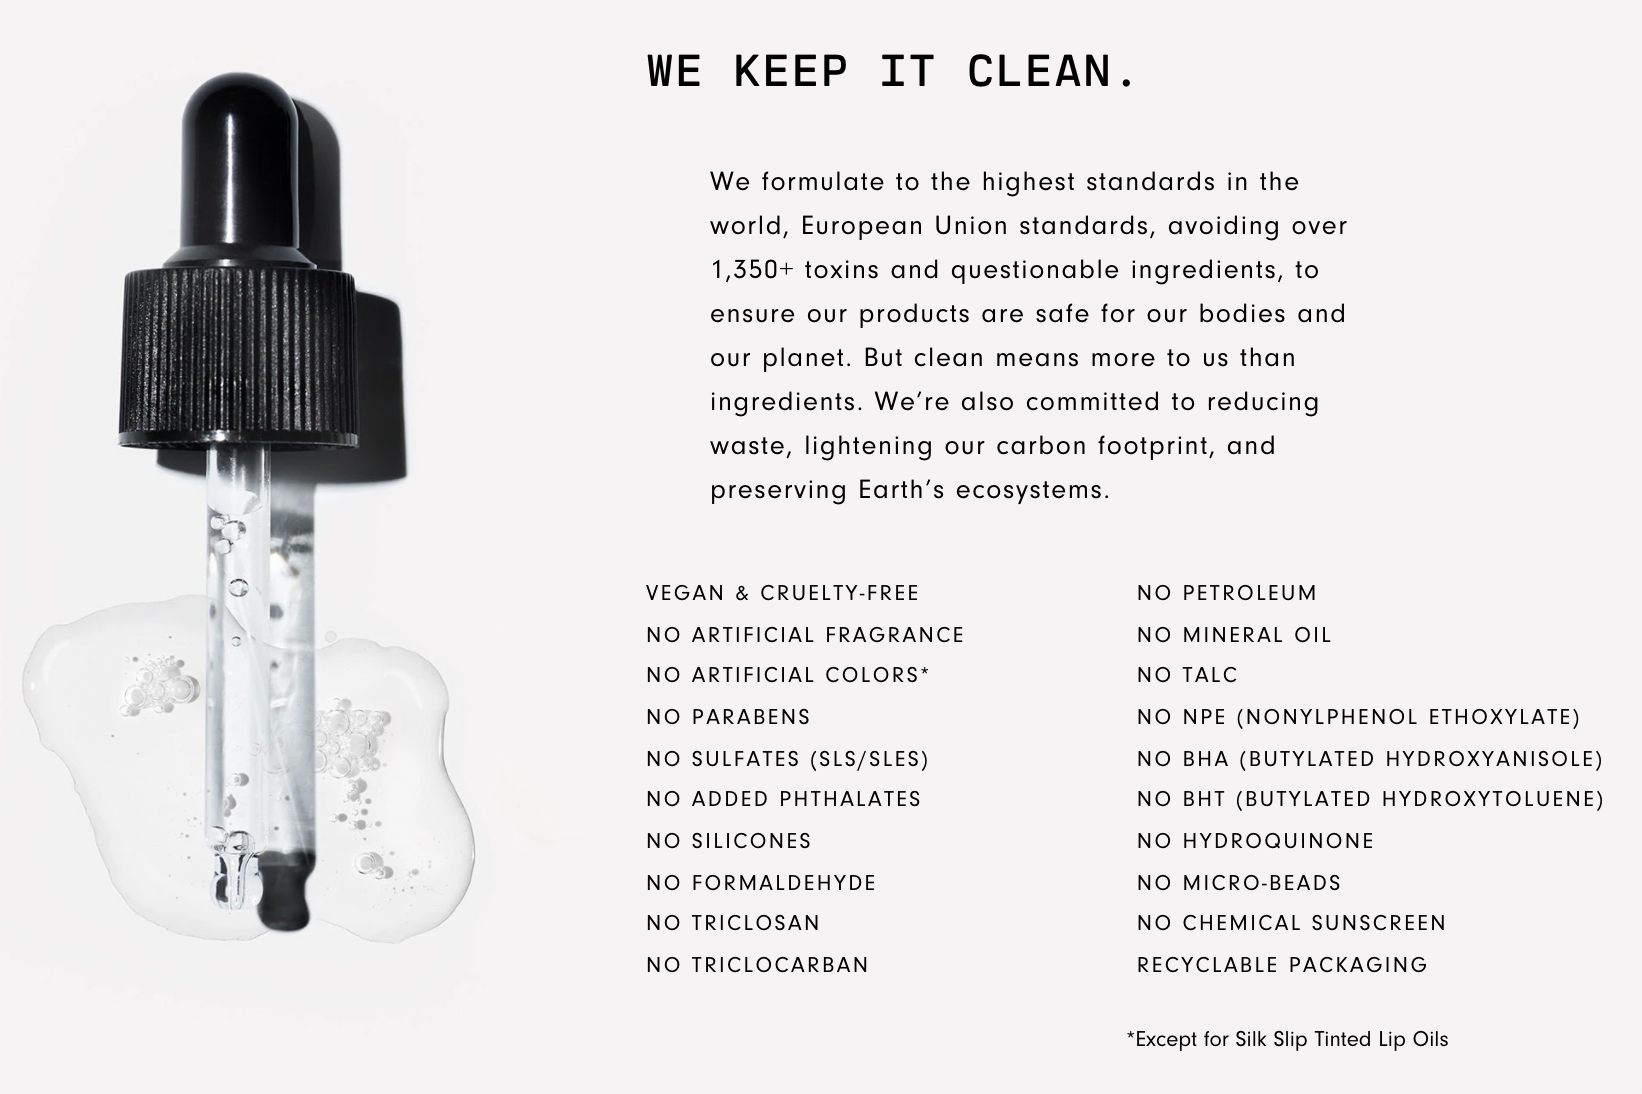 Versed Beauty Keep it Clean Website Statement